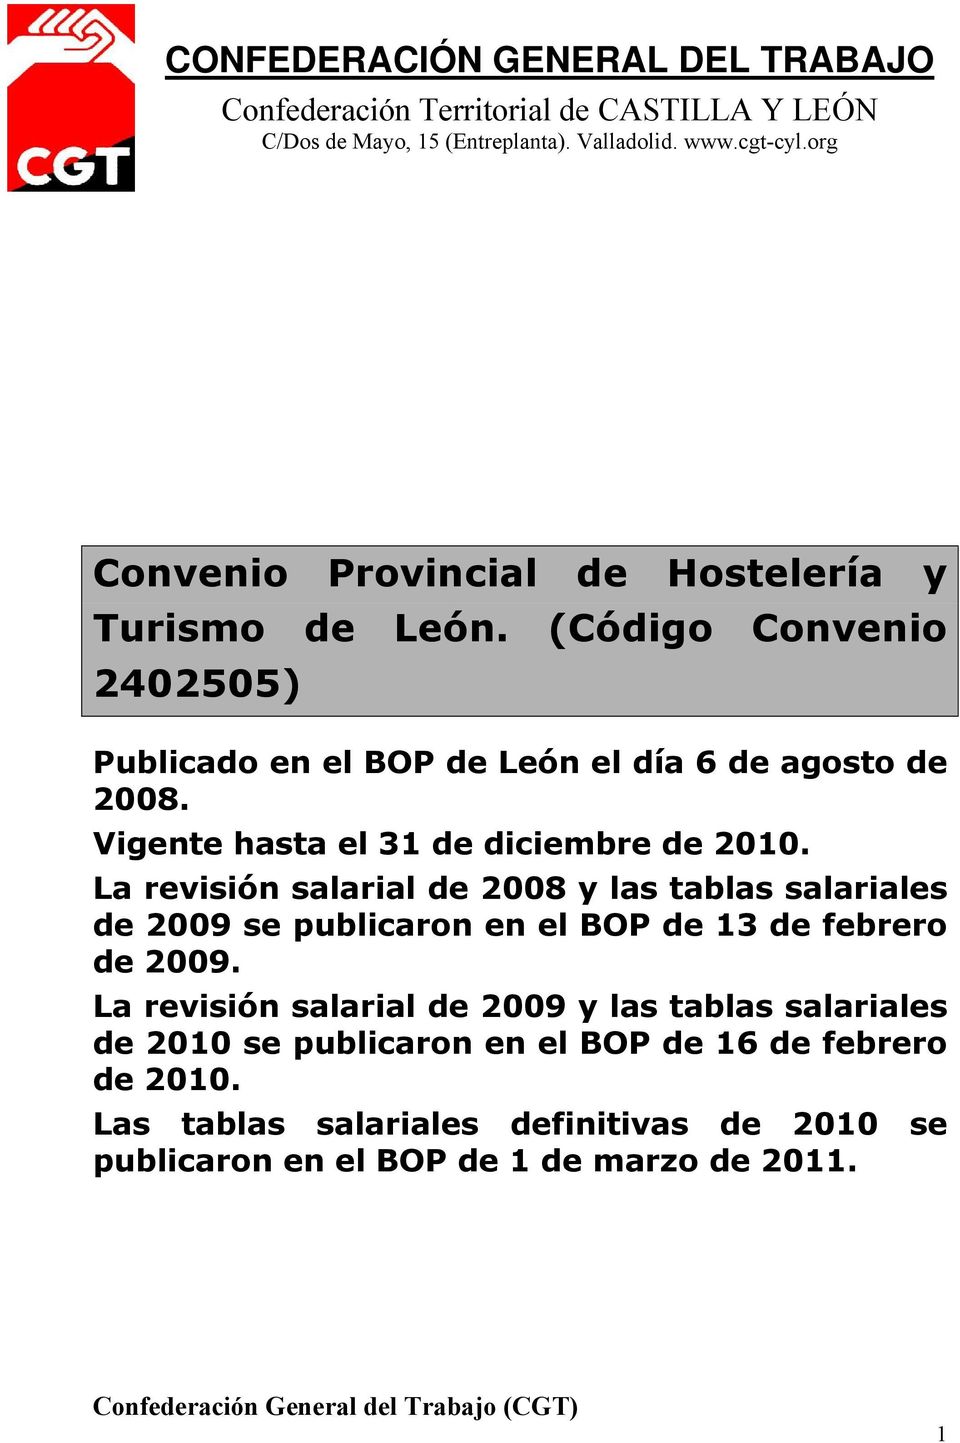 Vigente hasta el 31 de diciembre de 2010. La revisión salarial de 2008 y las tablas salariales de 2009 se publicaron en el BOP de 13 de febrero de 2009.